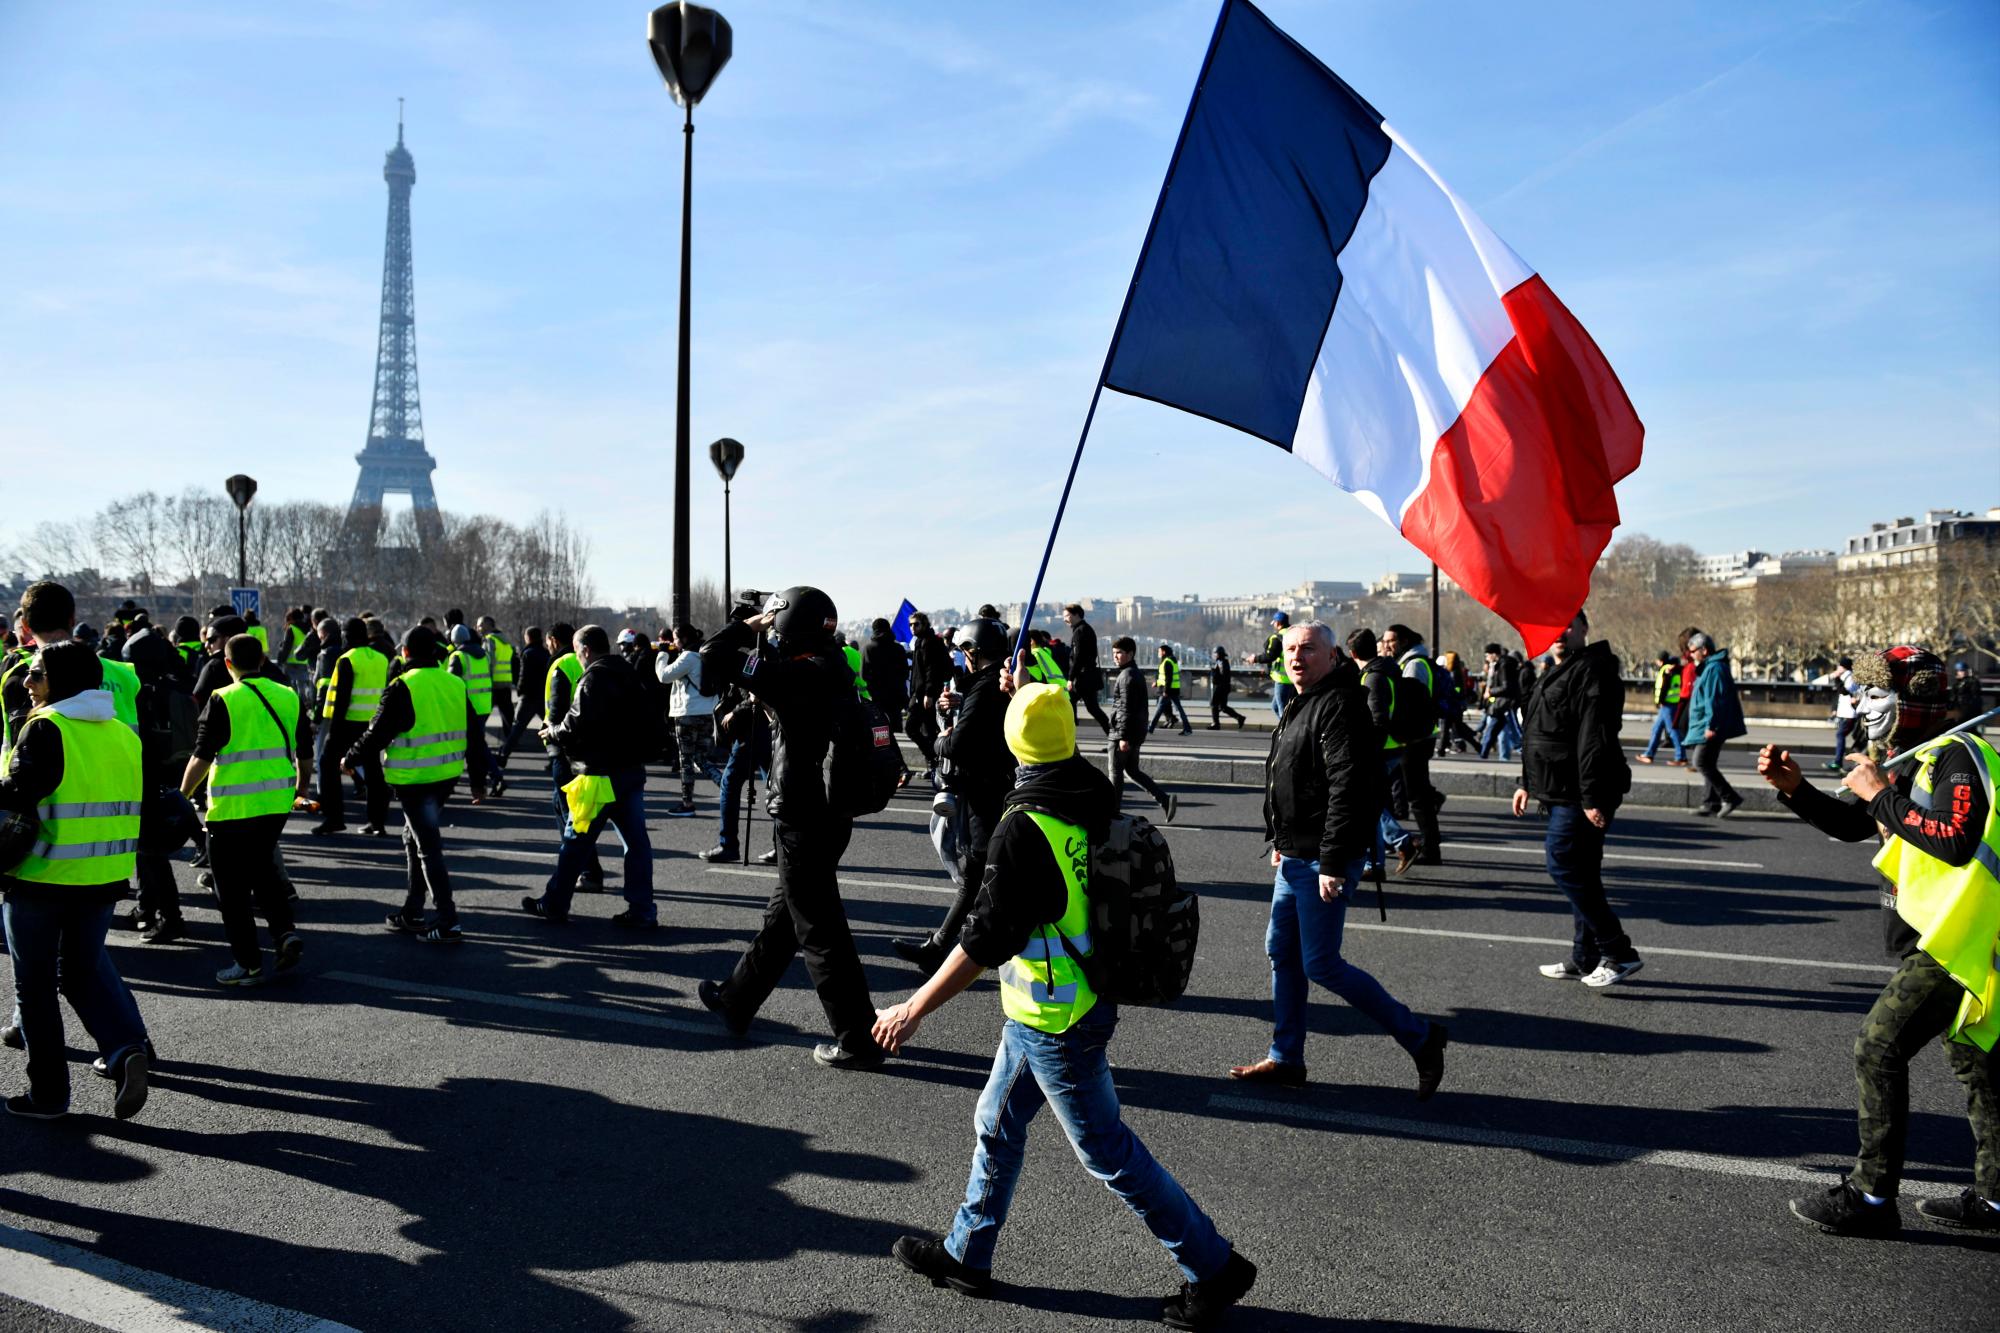 París (Francia), 16/02/2019.- Los manifestantes del movimiento ‘Gilets Jaunes’ (chalecos amarillos) que sostienen una bandera francesa pasan por la Torre Eiffel mientras caminan hacia los Inválidos durante la manifestación del ‘Acto XIV’ (la 14ª consecutiva protesta nacional un sábado) en París, Francia, el 16 de febrero de 2019. El llamado ‘Gilets Jaunes’ es un movimiento de protesta popular con partidarios de un amplio espectro del espectro político, que originalmente comenzó con una protesta en todo el país a fines de 2018. Contra los altos precios del combustible.